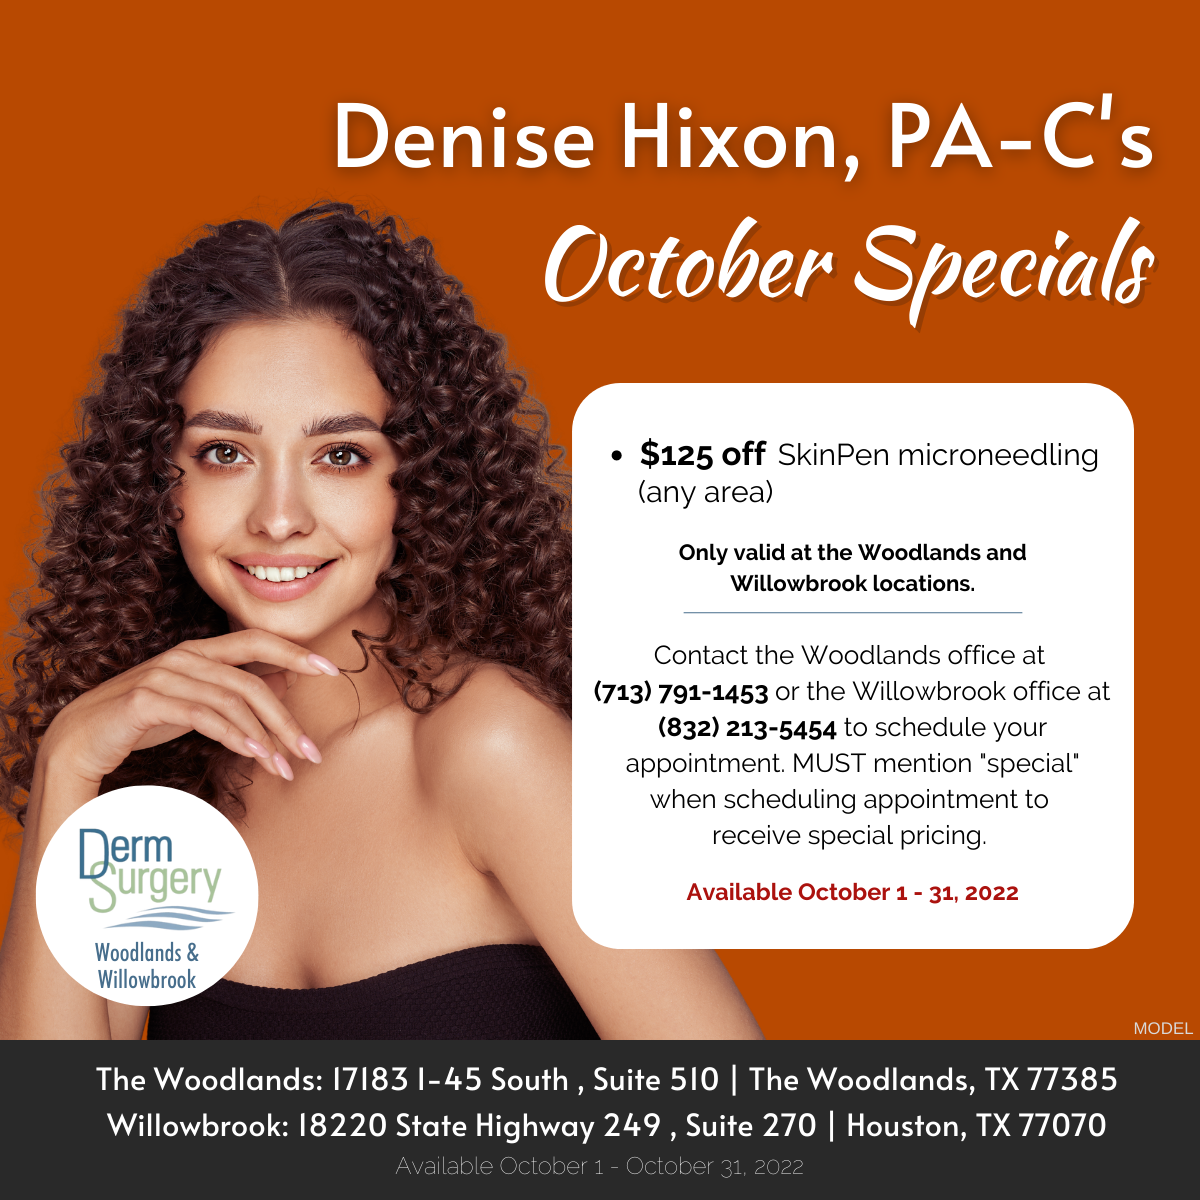 Denise Hixon, PA-C's October Specials 2022